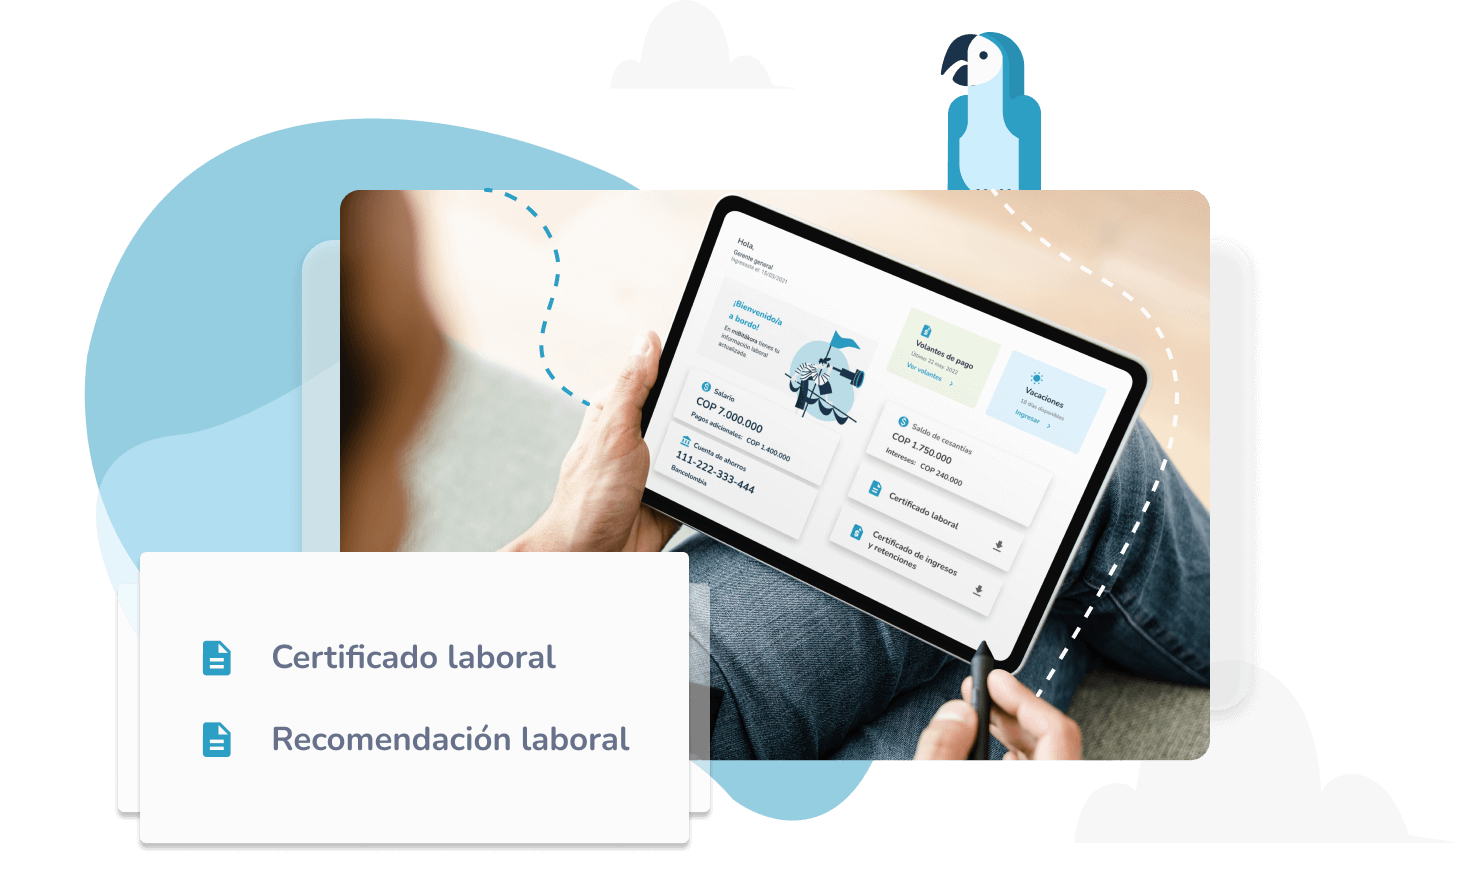 Descarga para imprimir o enviar por correo las certificaciones laborales de tu empresa con miBitákora